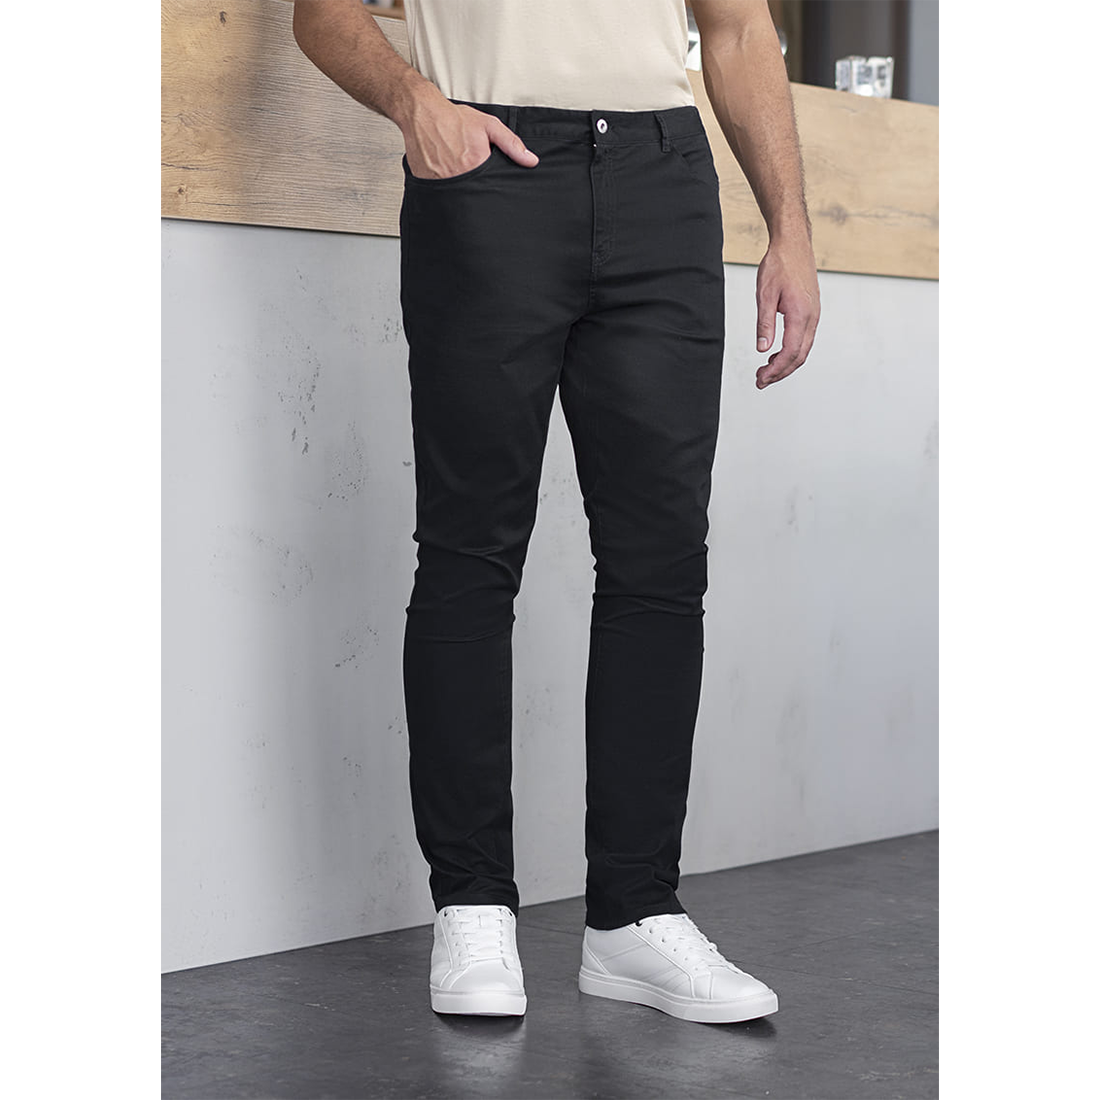 Pantaloni pentru barbati Classic-Stretch cu 5 buzunare - Imbracaminte de protectie